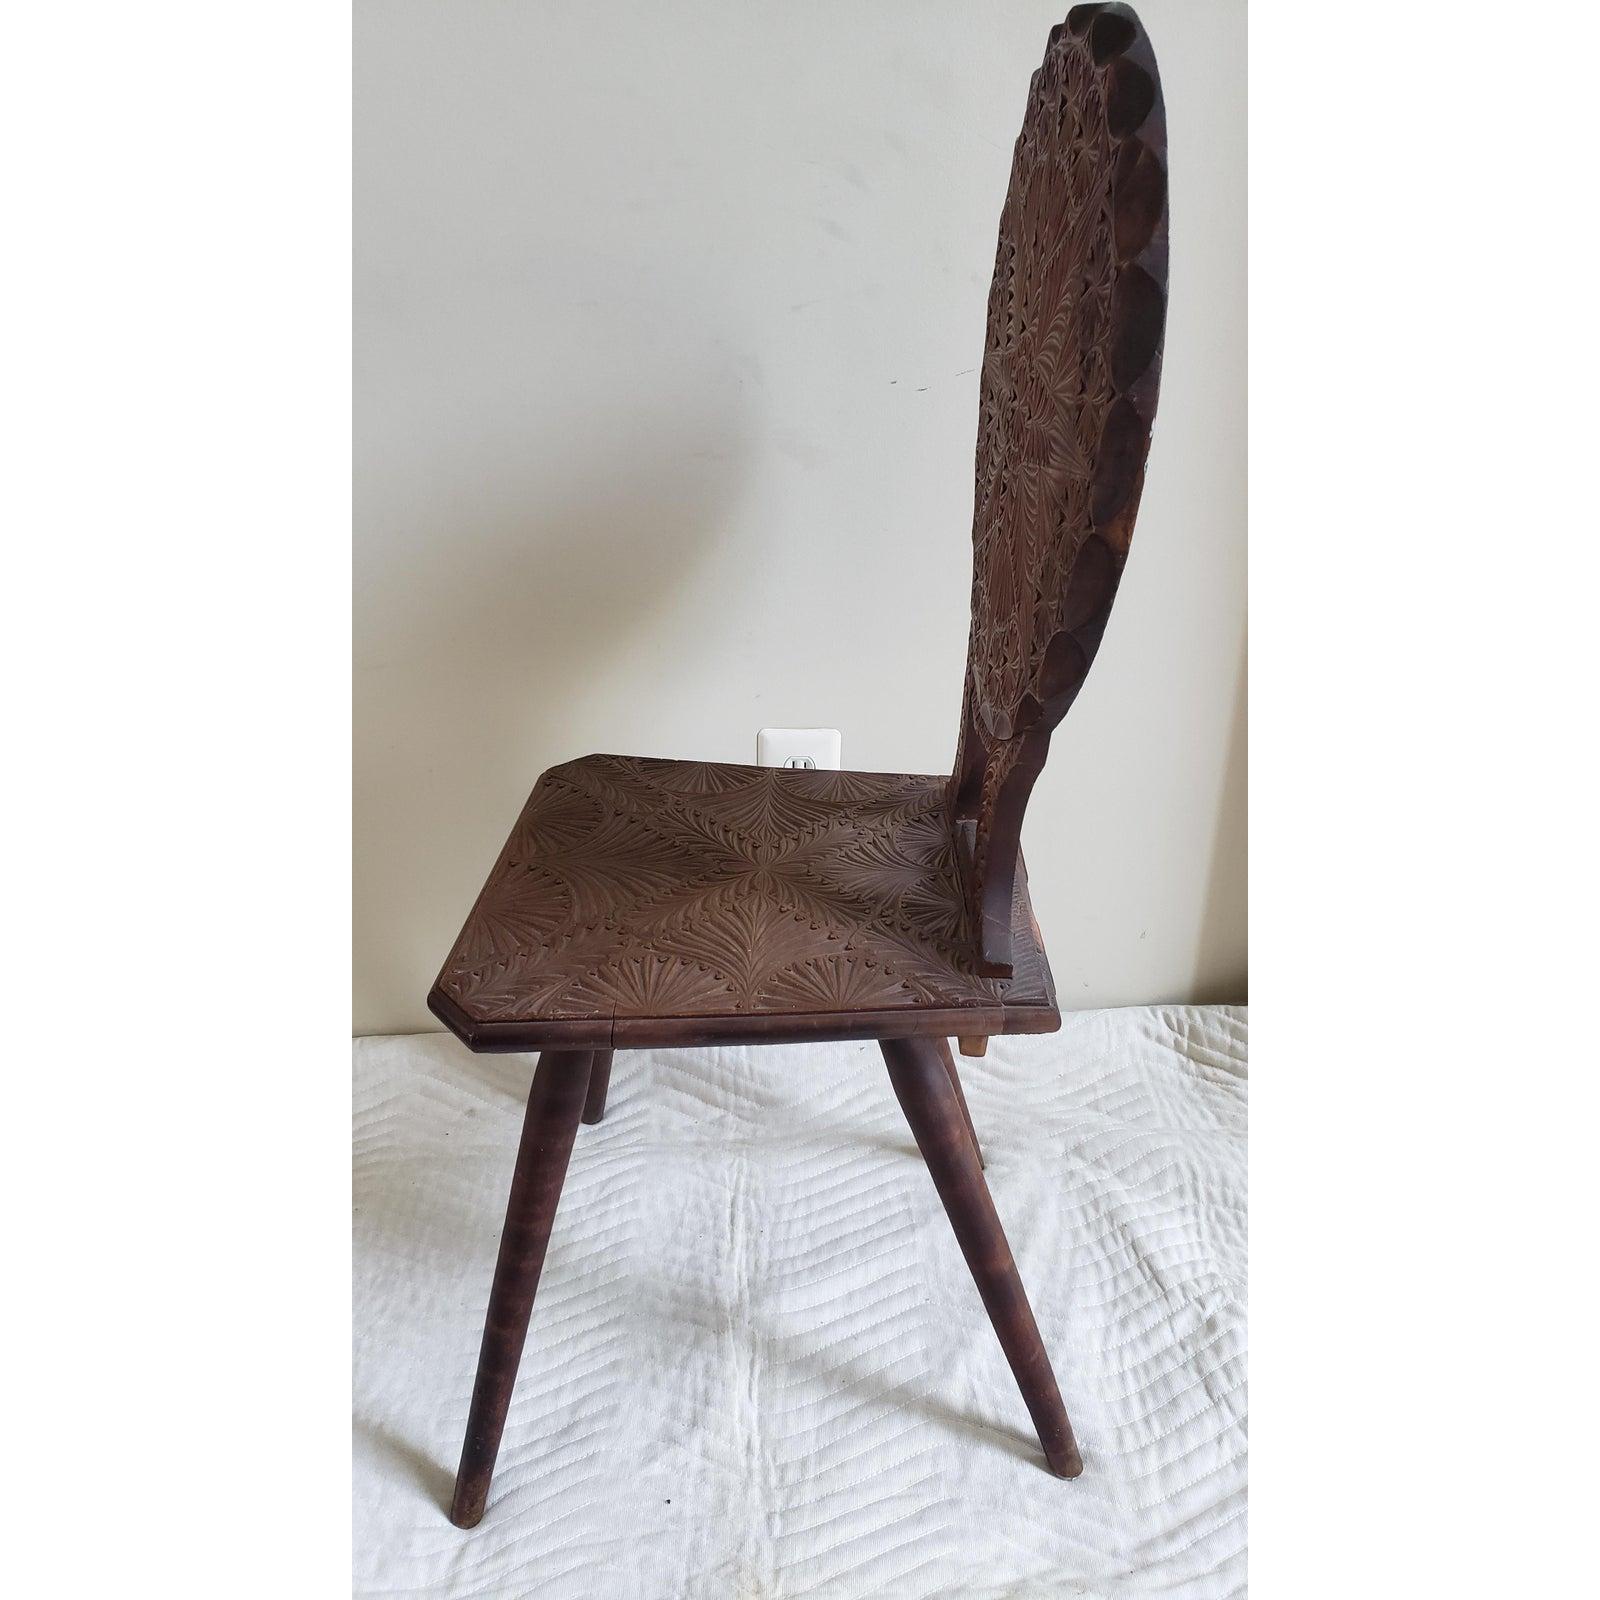 Antiker handgeschnitzter Stuhl in ausgezeichnetem Vintage-Zustand.
Der Stuhl misst 18 B x 18 T x 41 H.
Sehr schöne Schnitzereien. Massivholz.